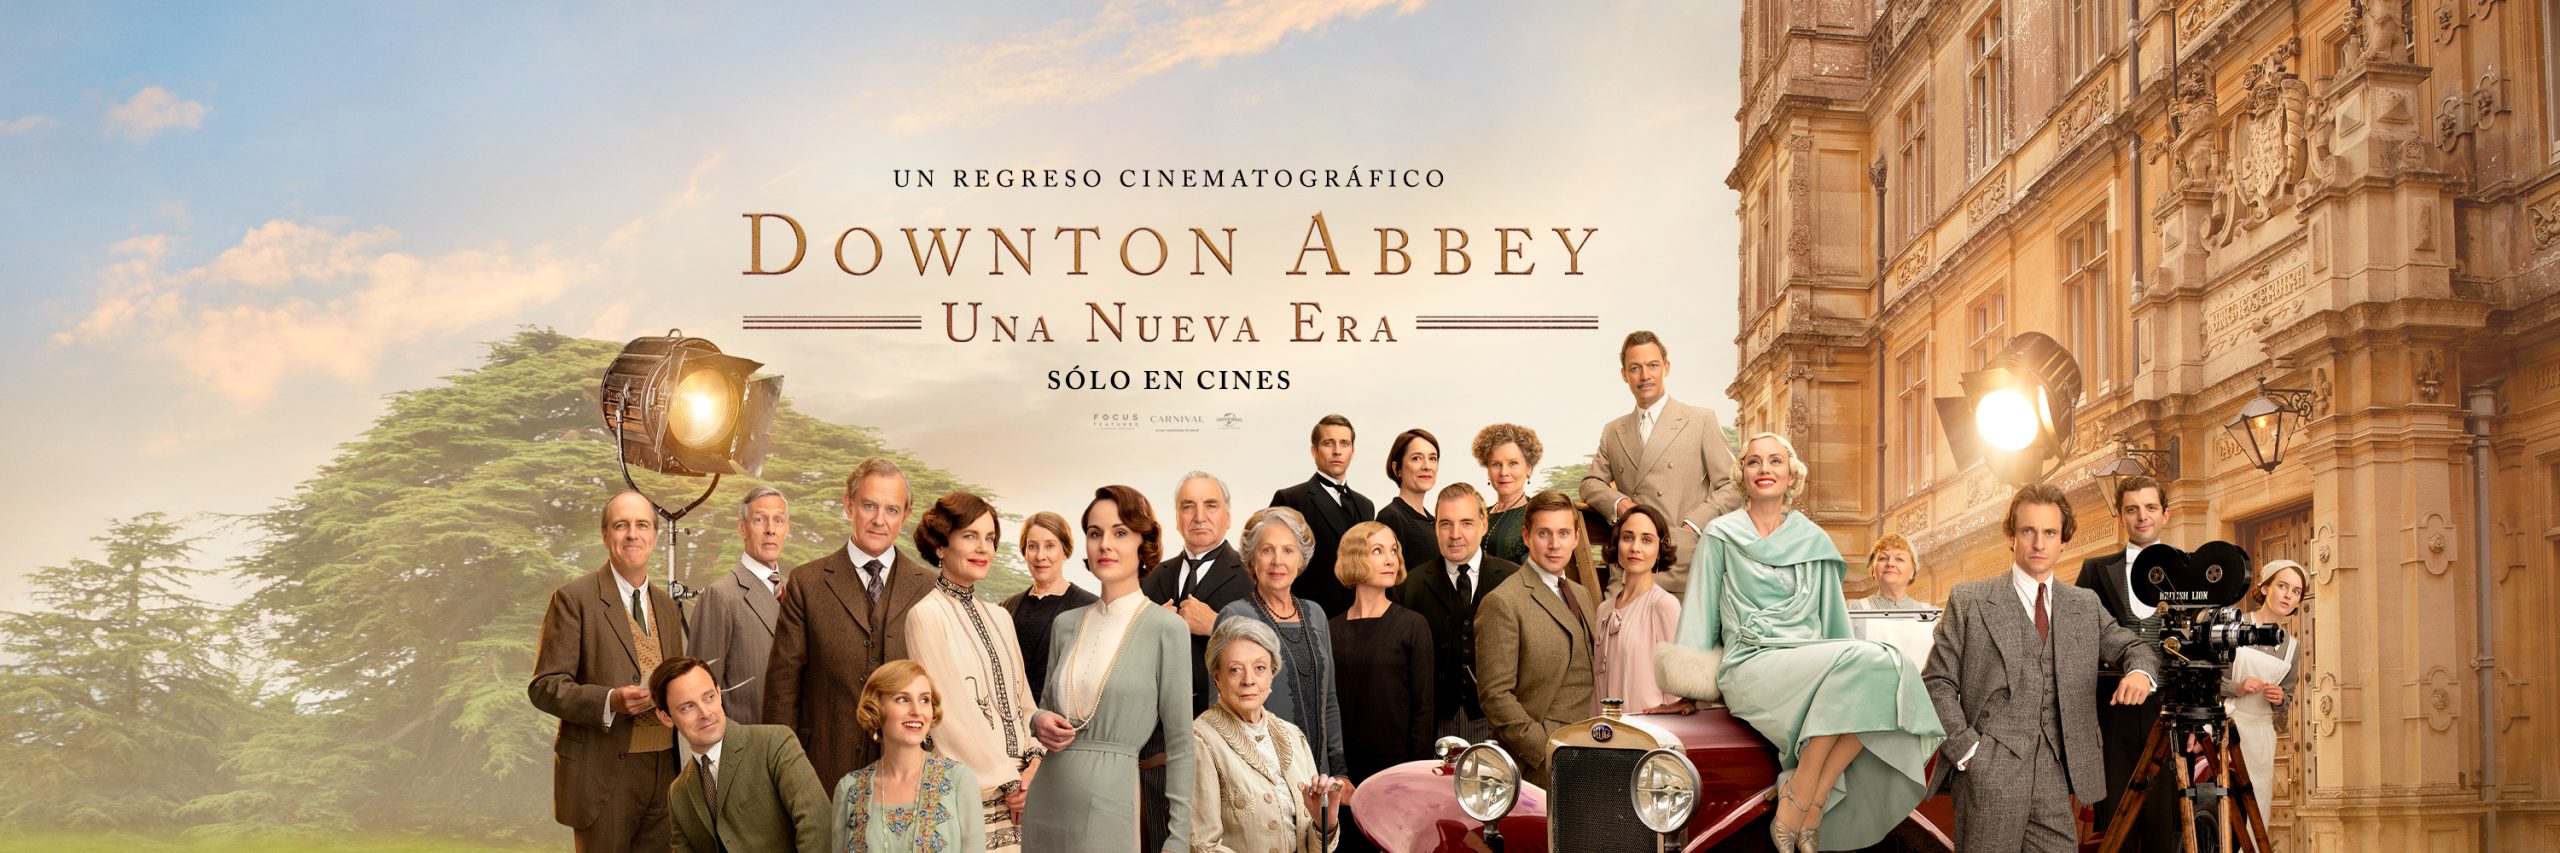 Foto de Downton Abbey Una Nueva Era estará, exclusivamente en los cines, desde este jueves 28